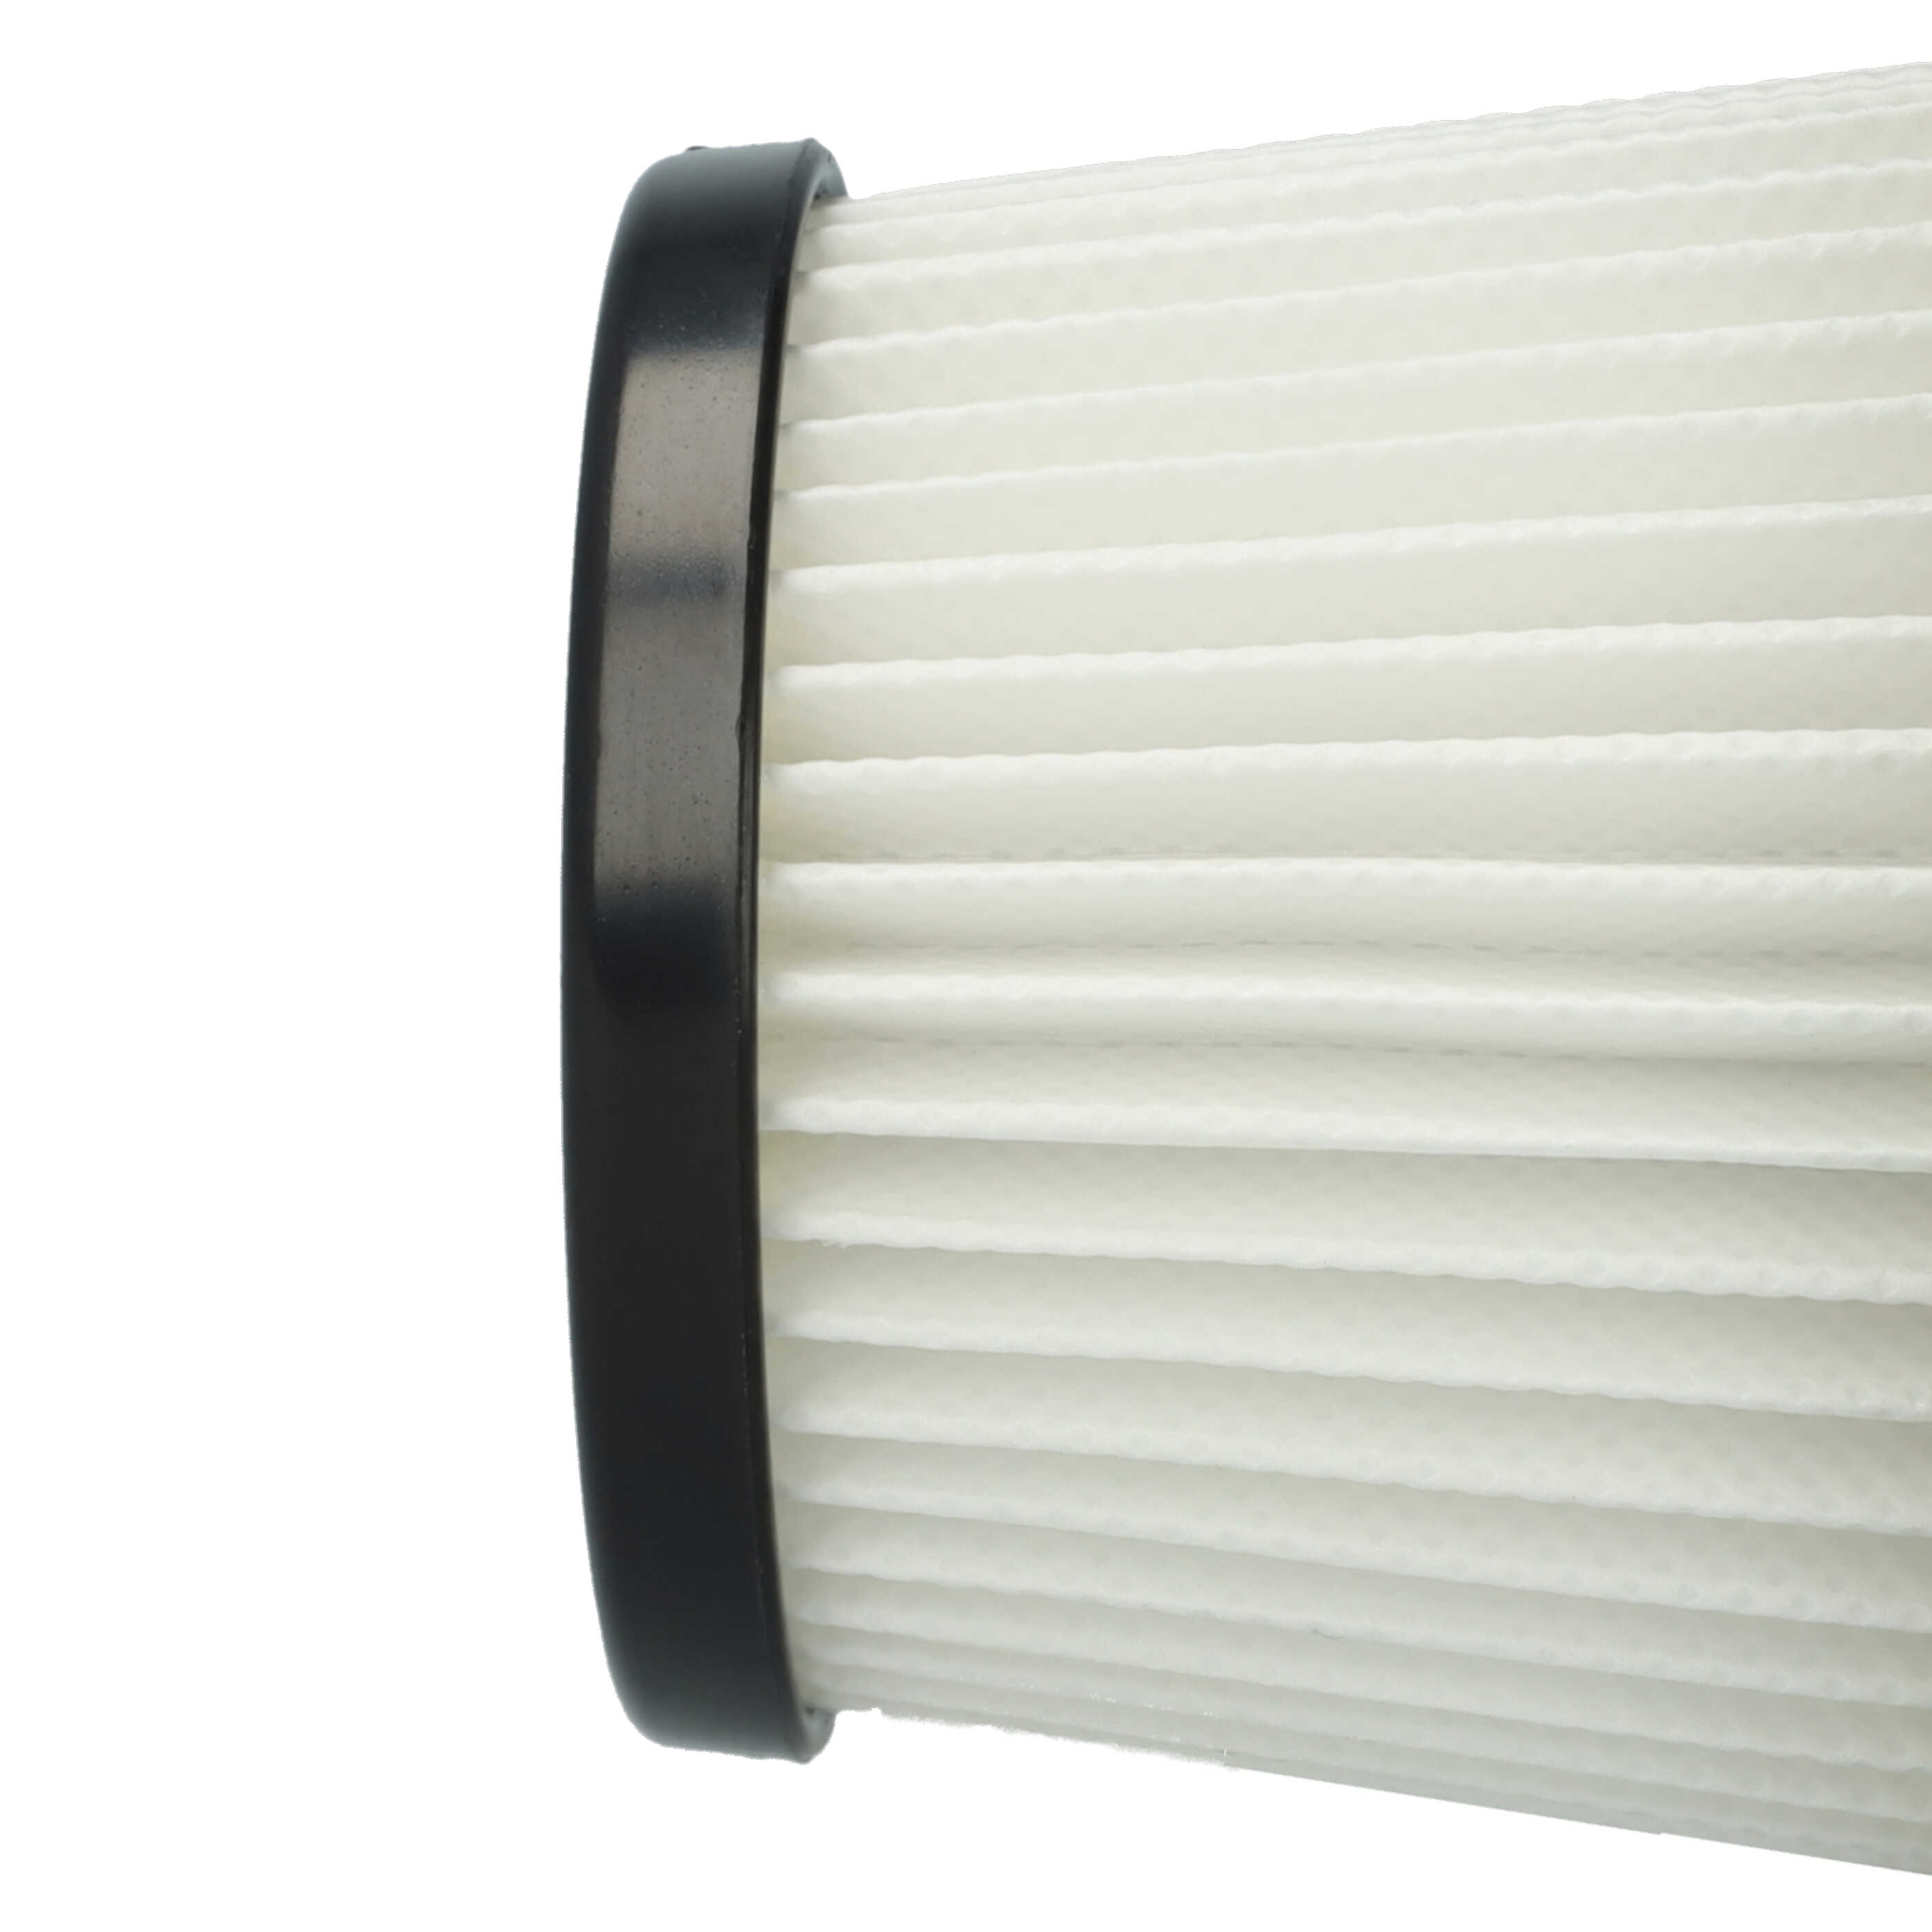 3x Filtres pour aspirateur Moosoo K24 - filtre HEPA E10